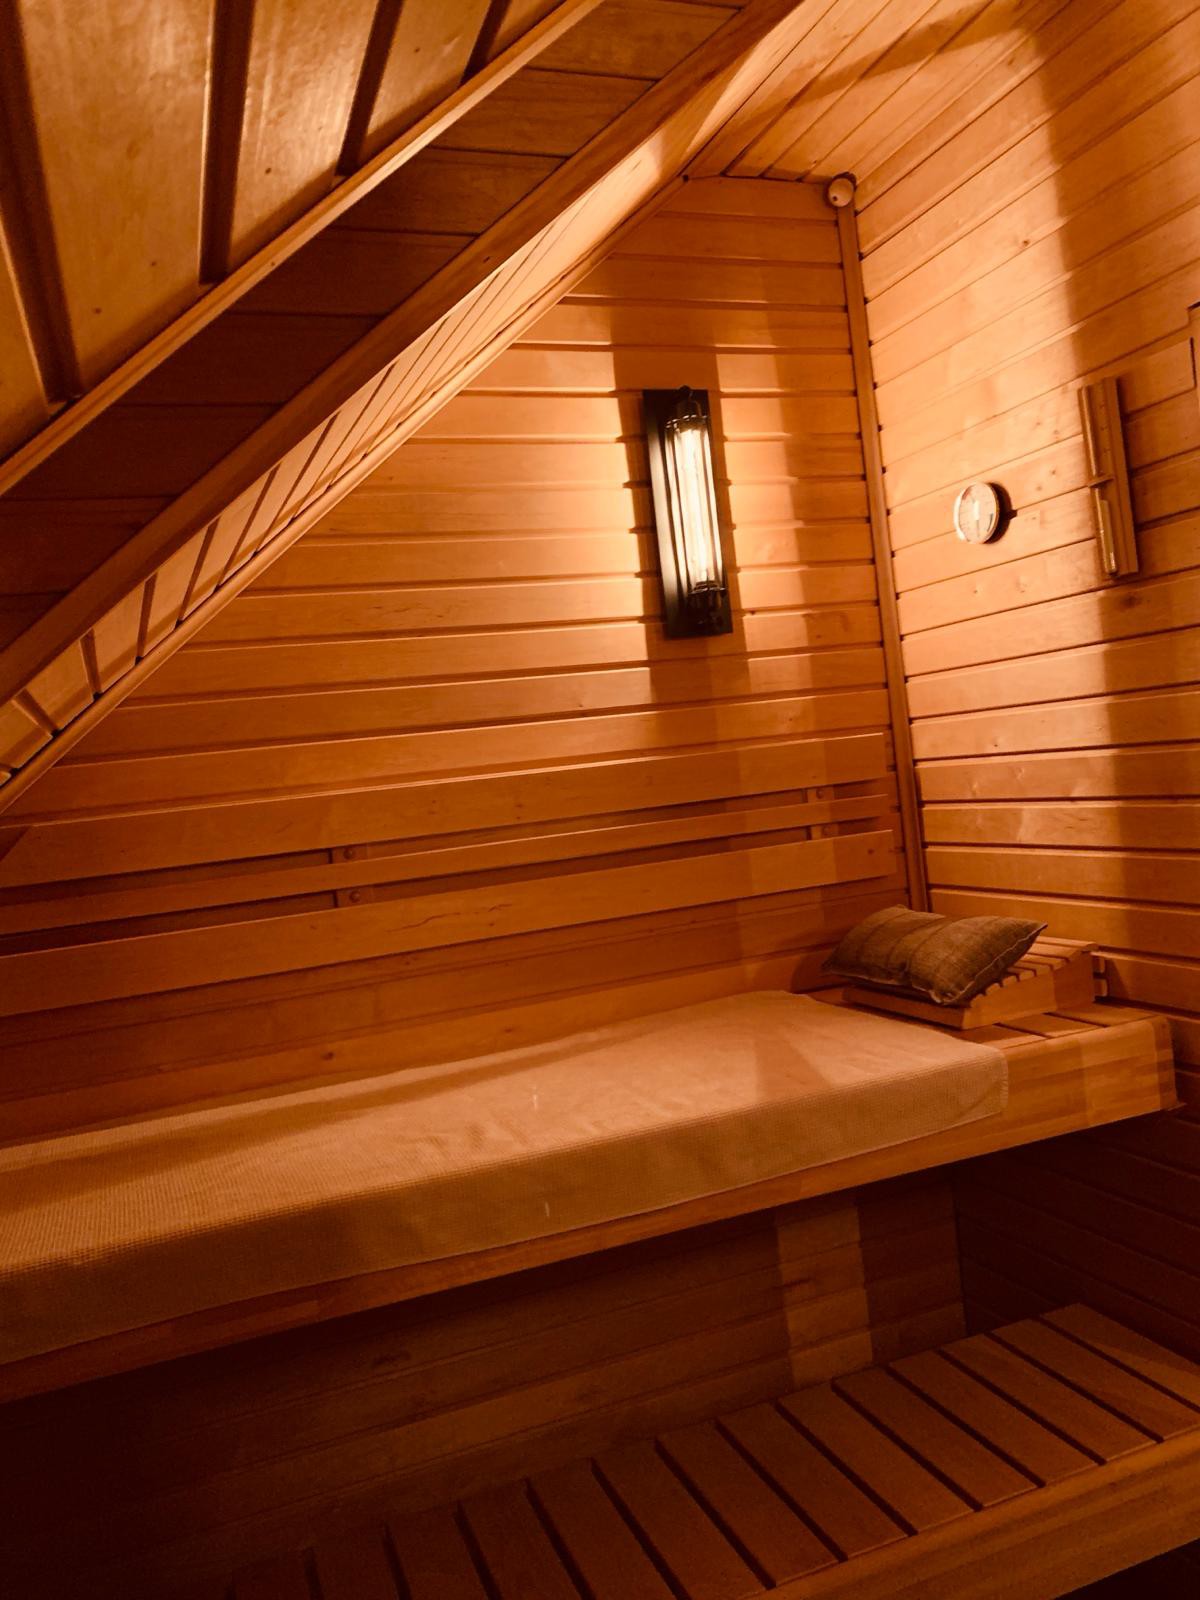 Luxus auf 82qm mit eigener Sauna